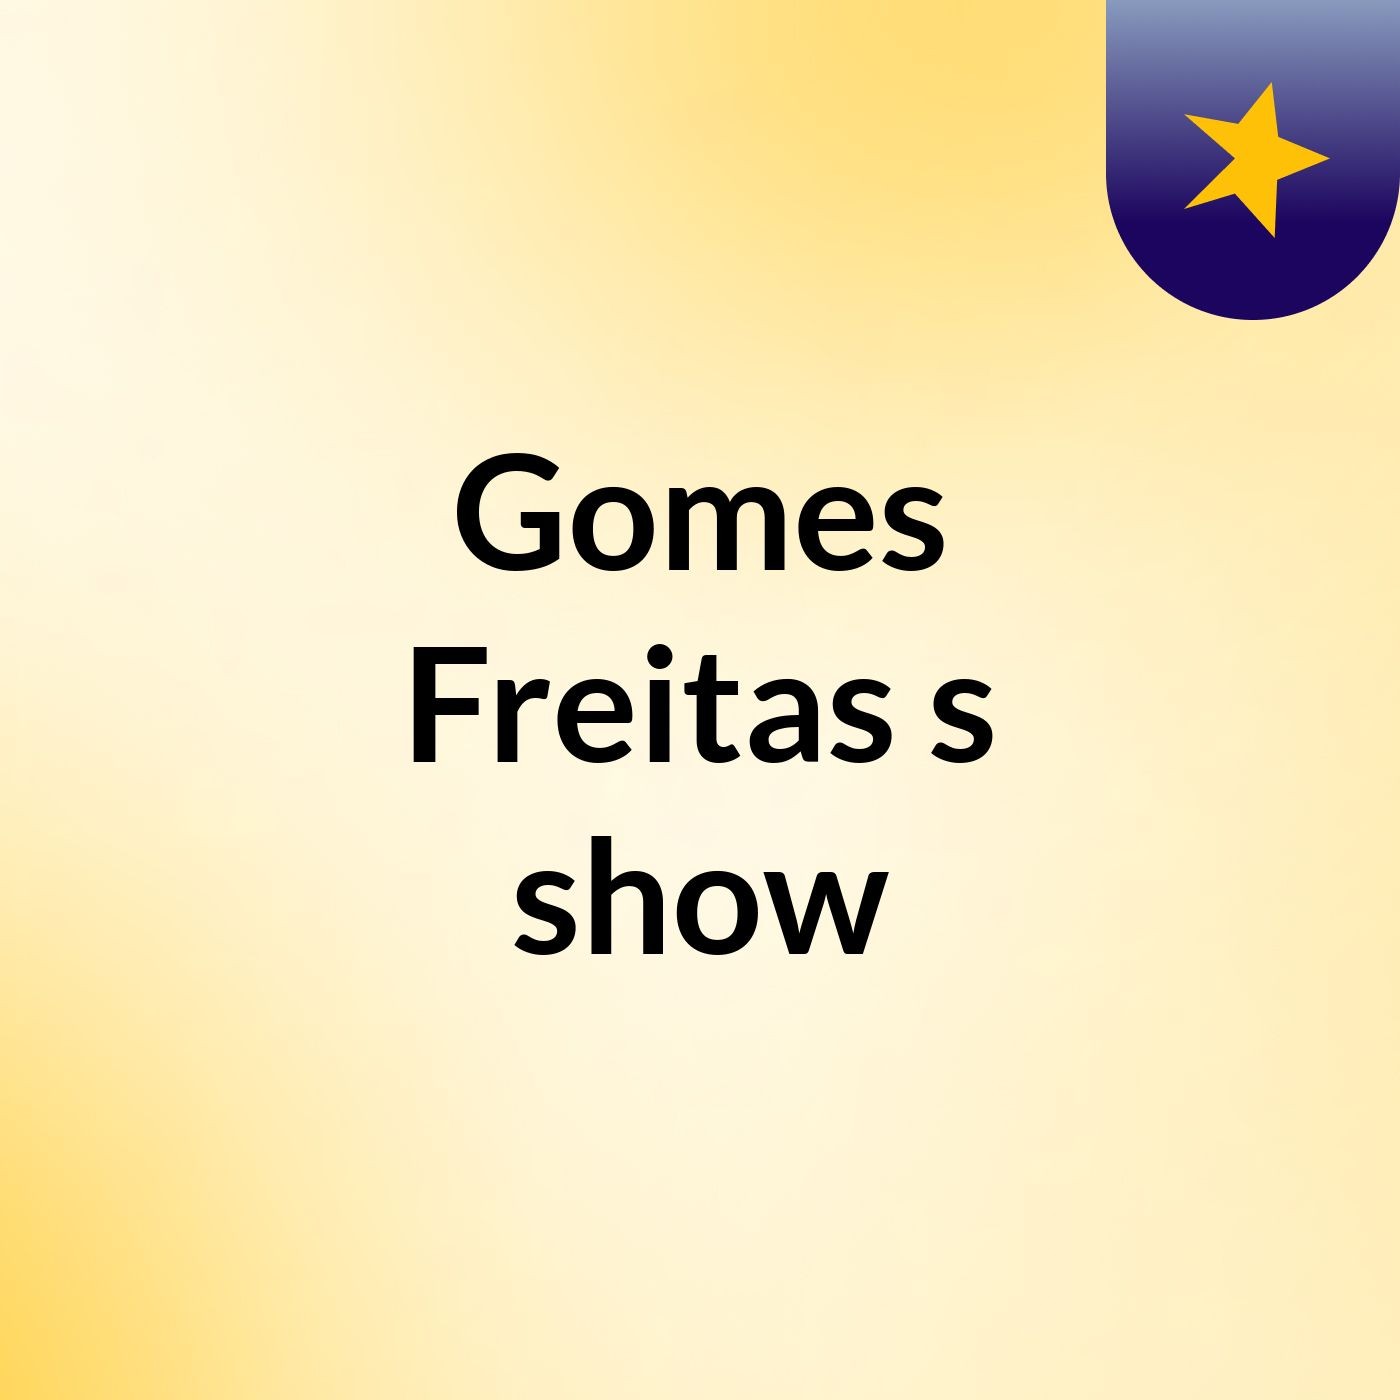 Gomes Freitas's show